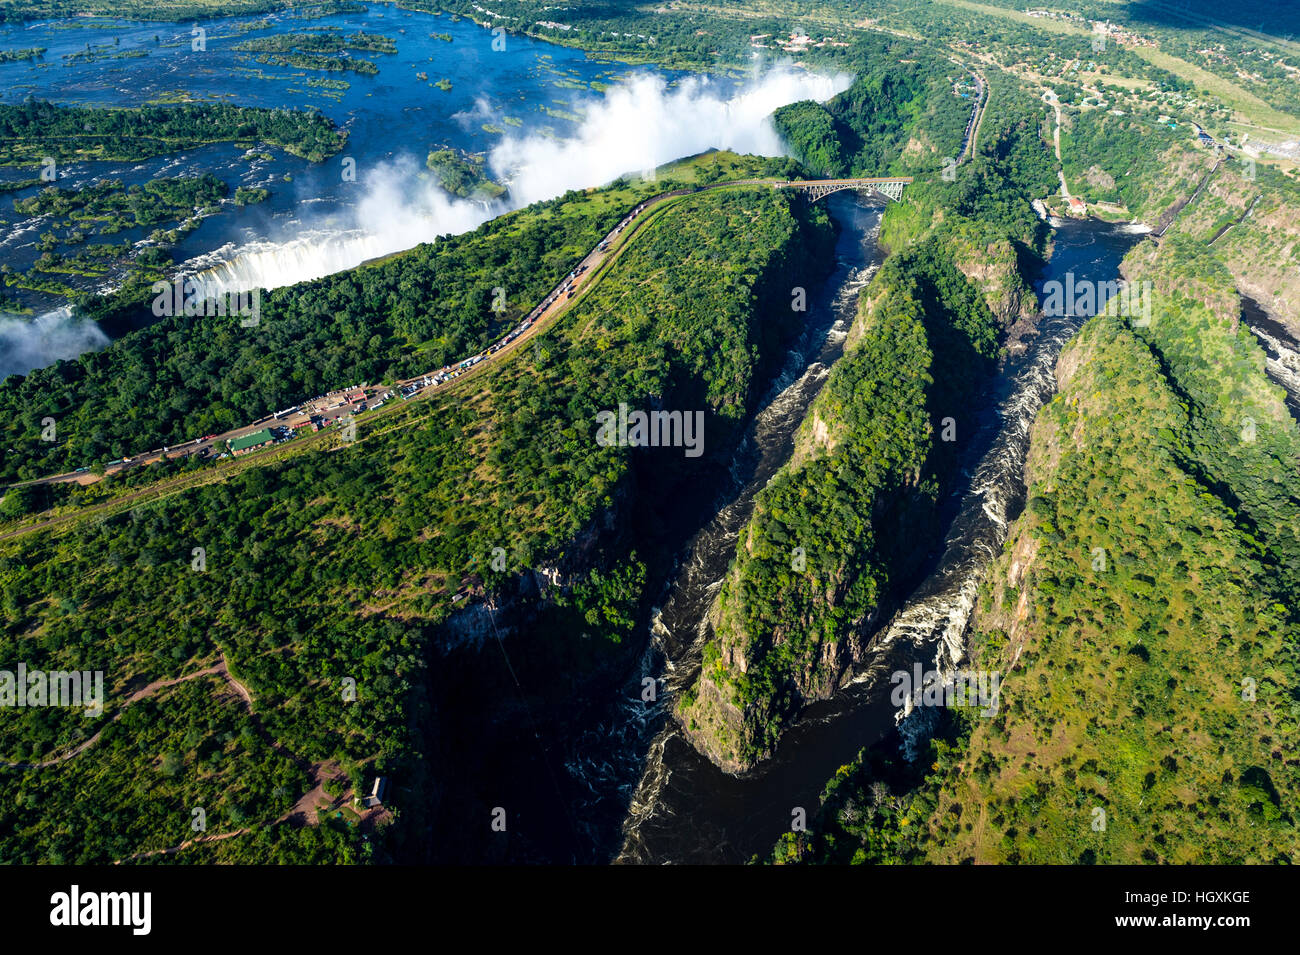 Eine Luftaufnahme von Victoria Falls und eine gewundene Schlucht geschnitzt in eine flache Ebene am Sambesi-Fluss. Stockfoto